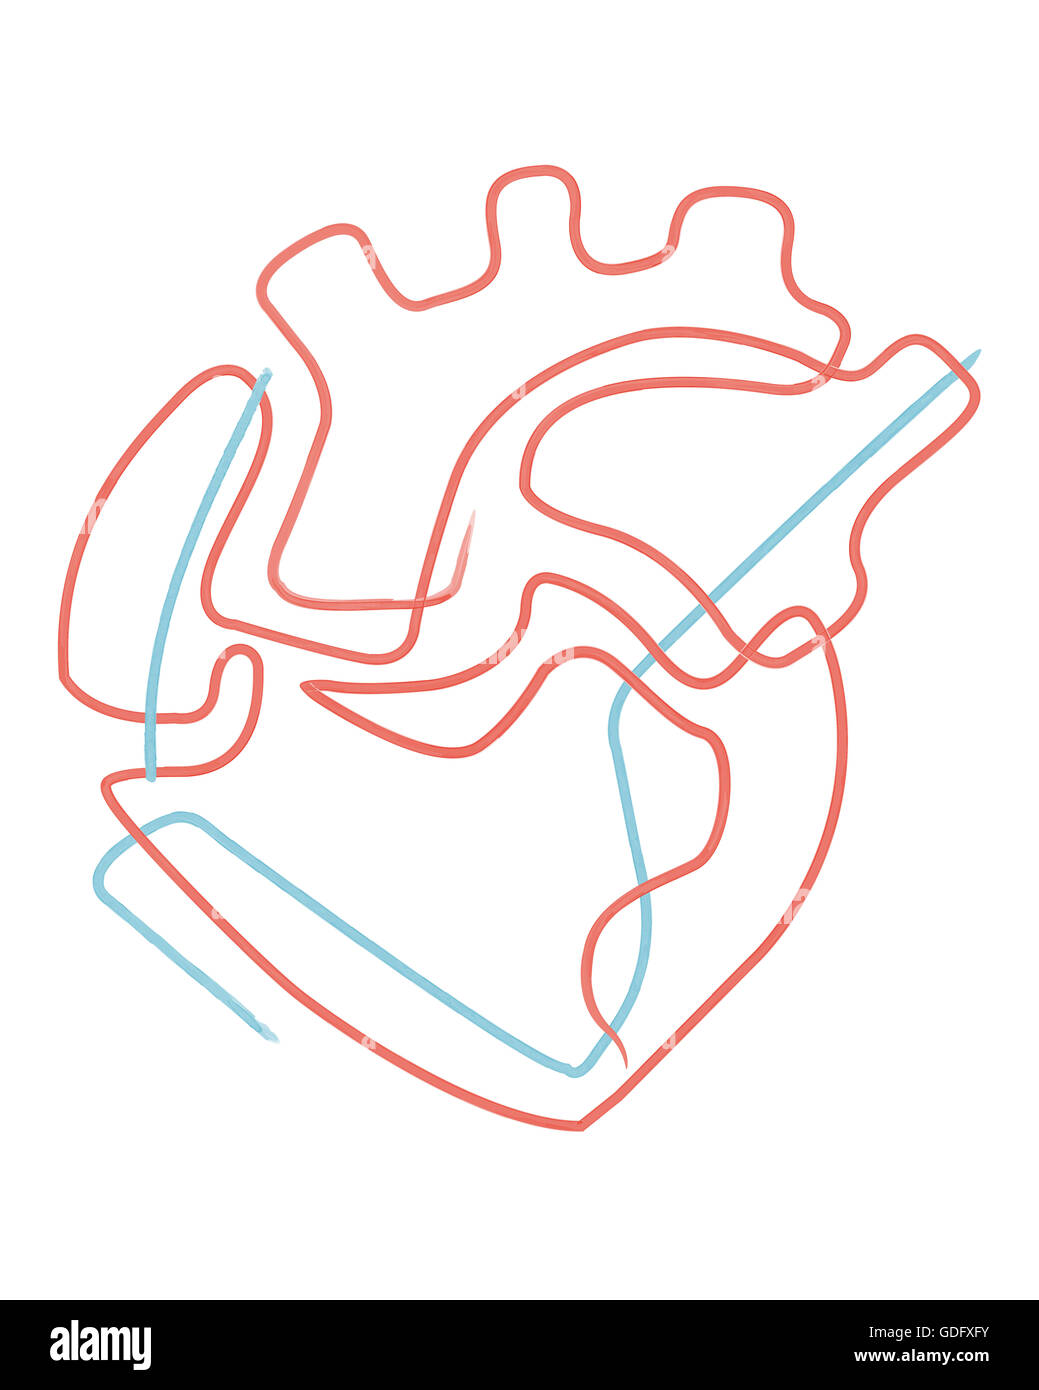 Handgezeichnete Illustrationen oder Zeichnung eines abstrakten menschlichen Herzens Stockfoto